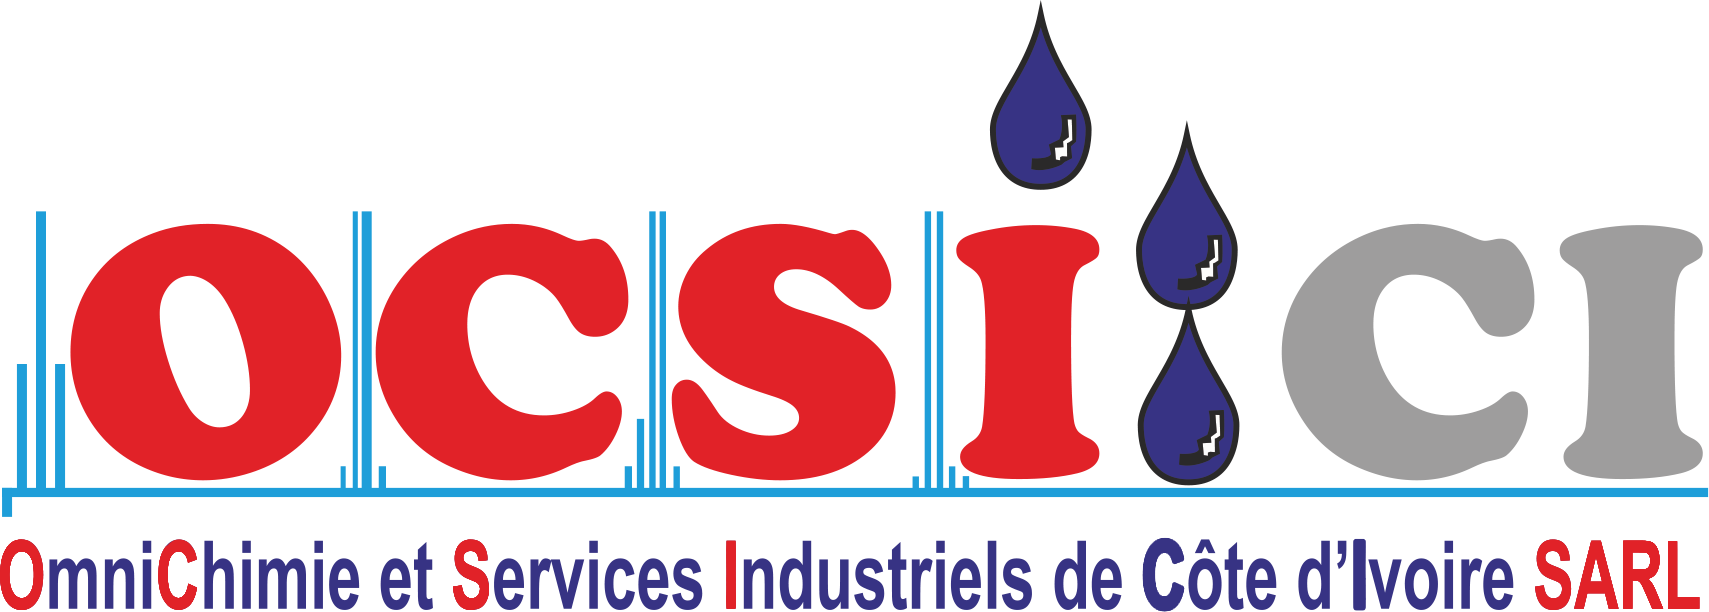 OCSI-CI logo